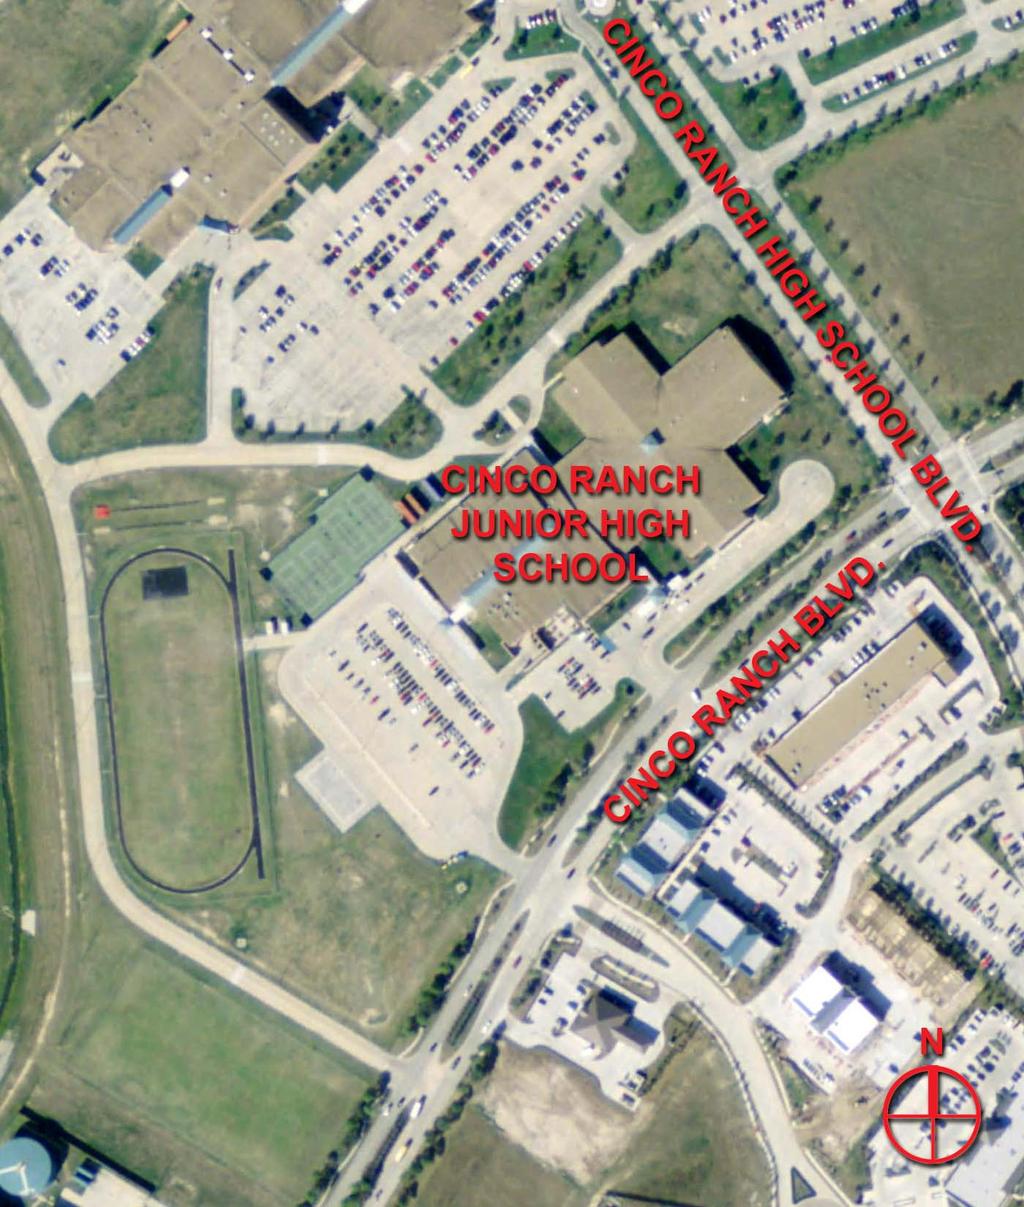 Existing Cinco Ranch Junior High School